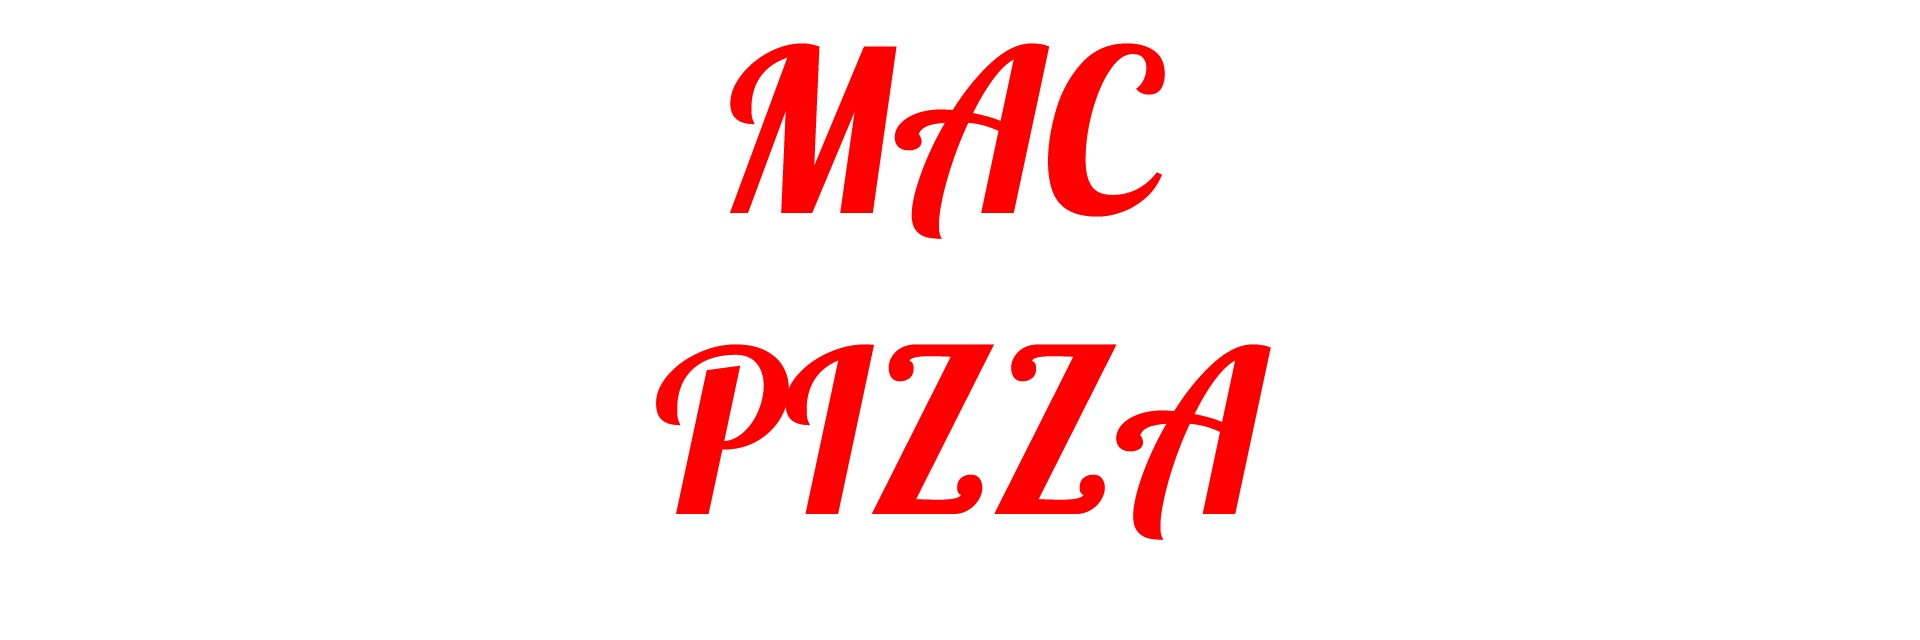 MAC PIZZA